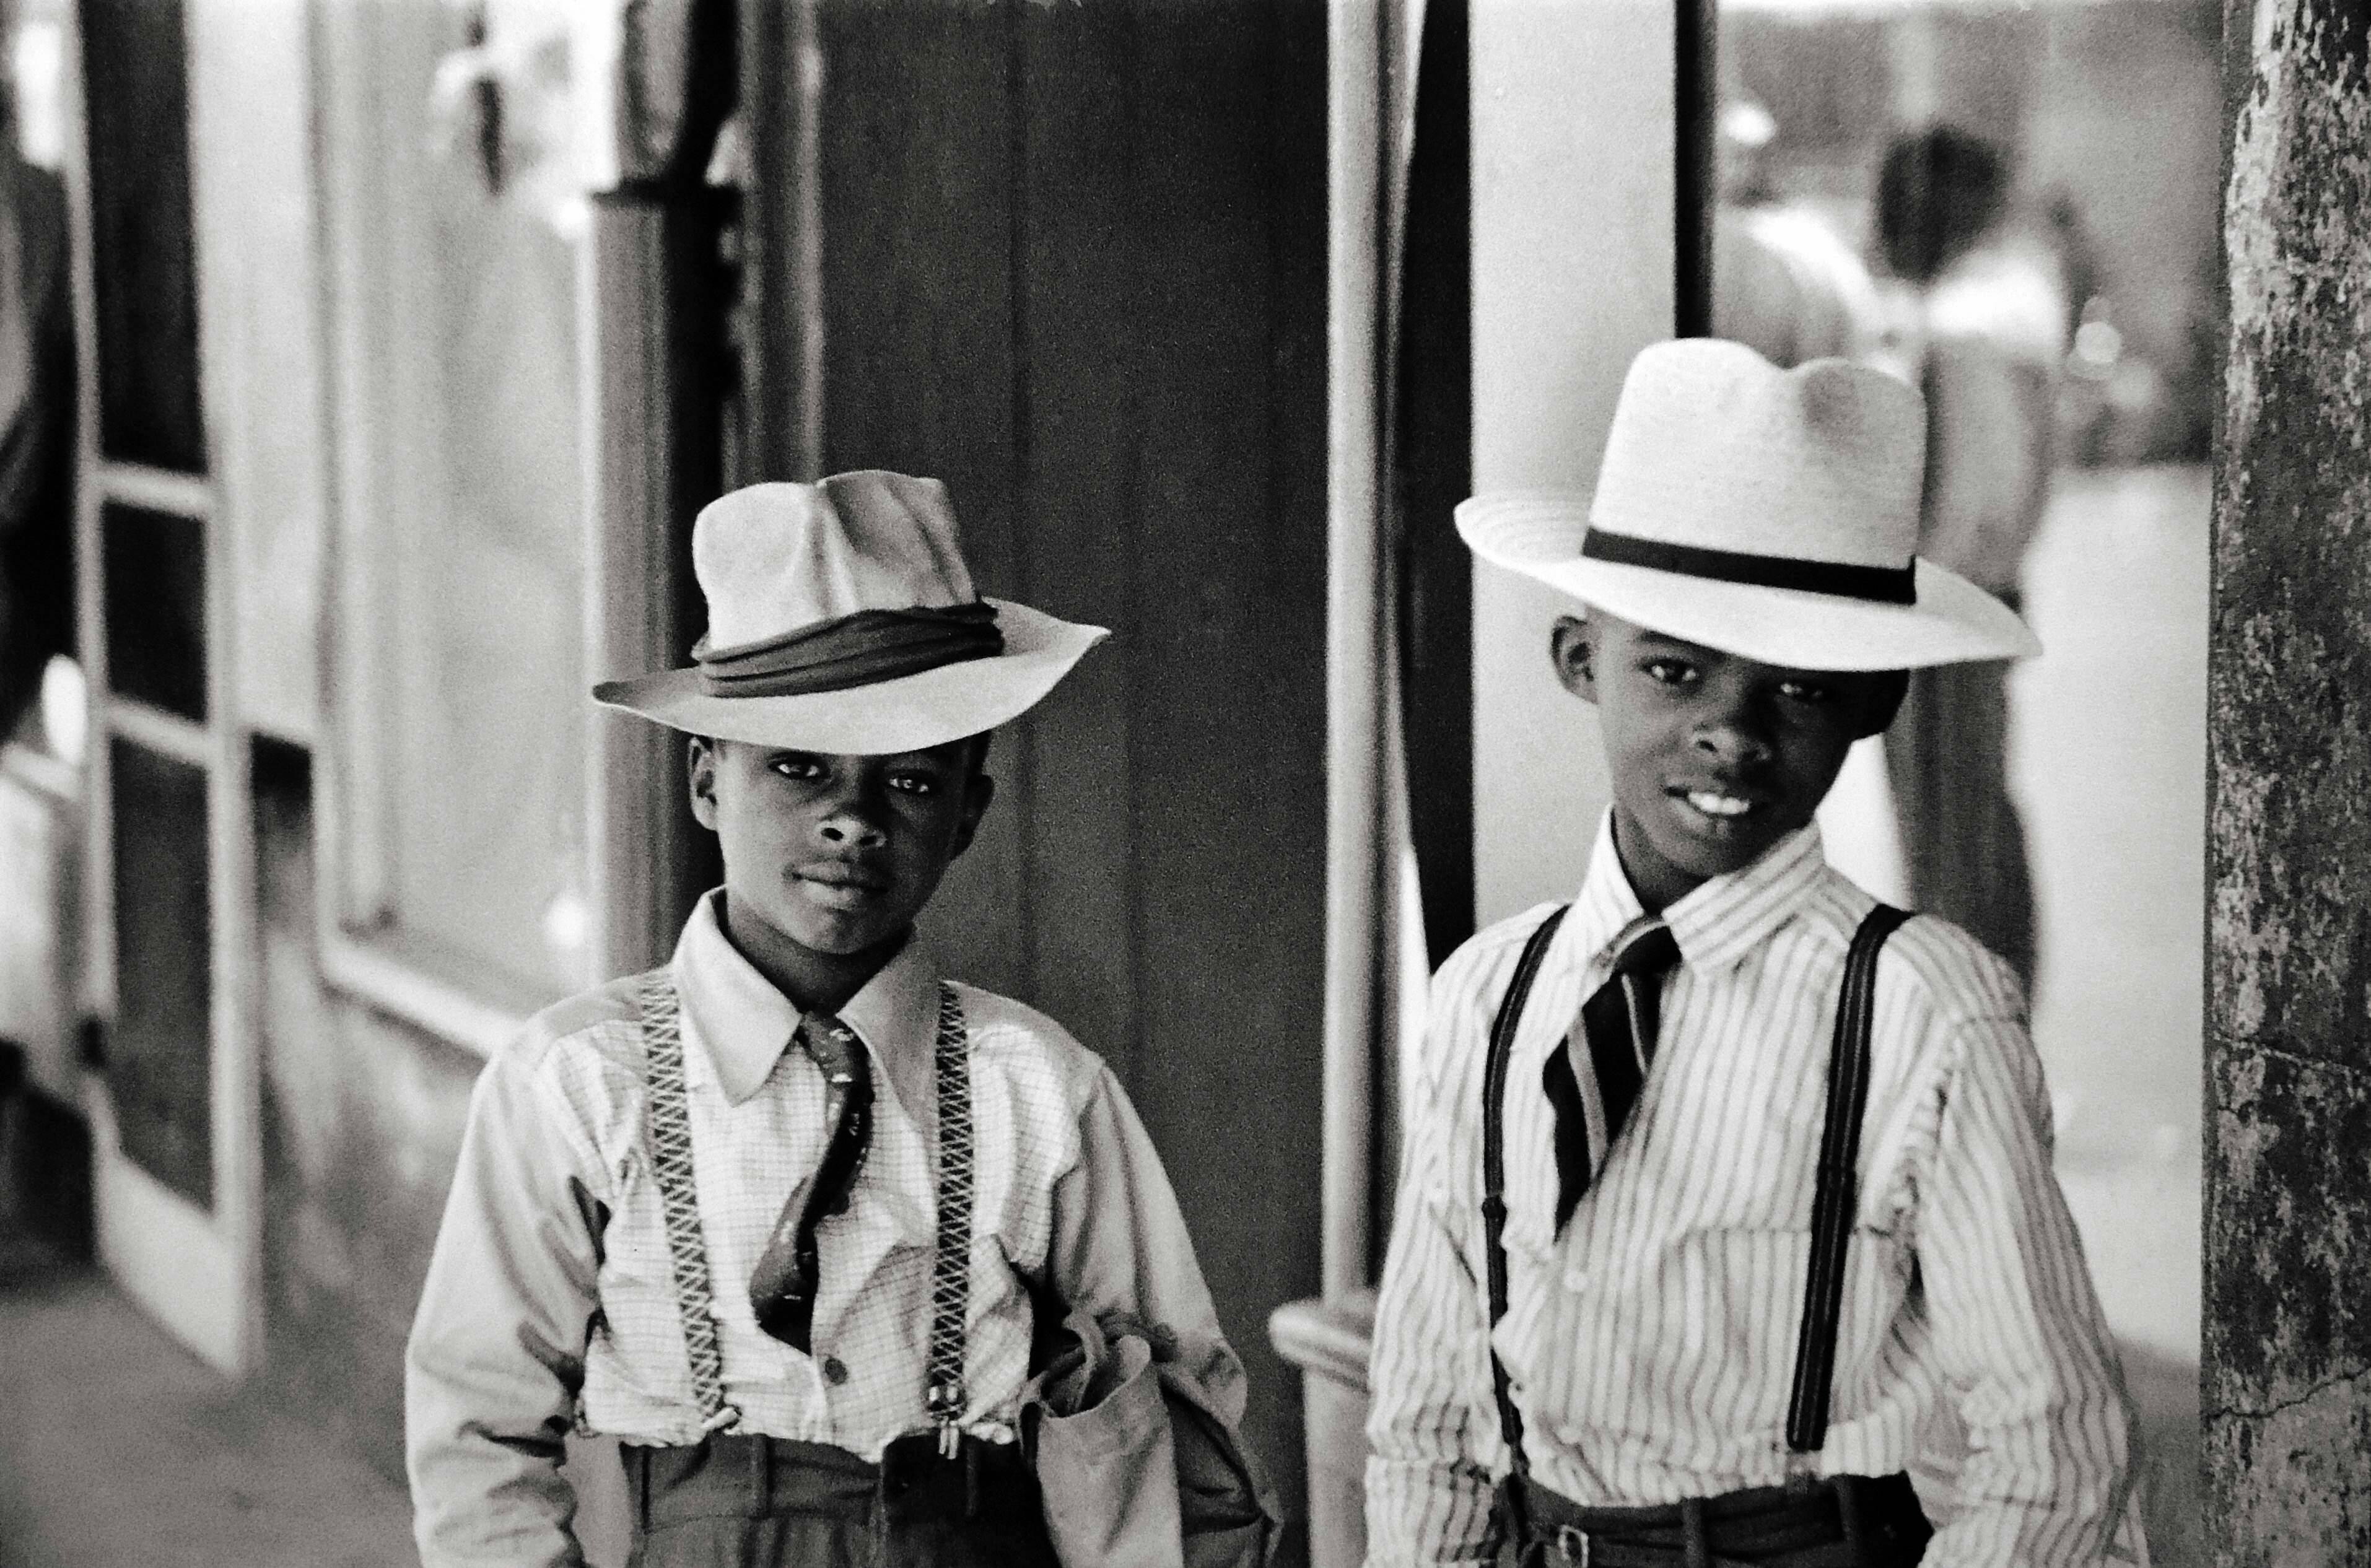 Натчез, штат Миссисипи, США, 1947. Фотограф Анри Картье-Брессон